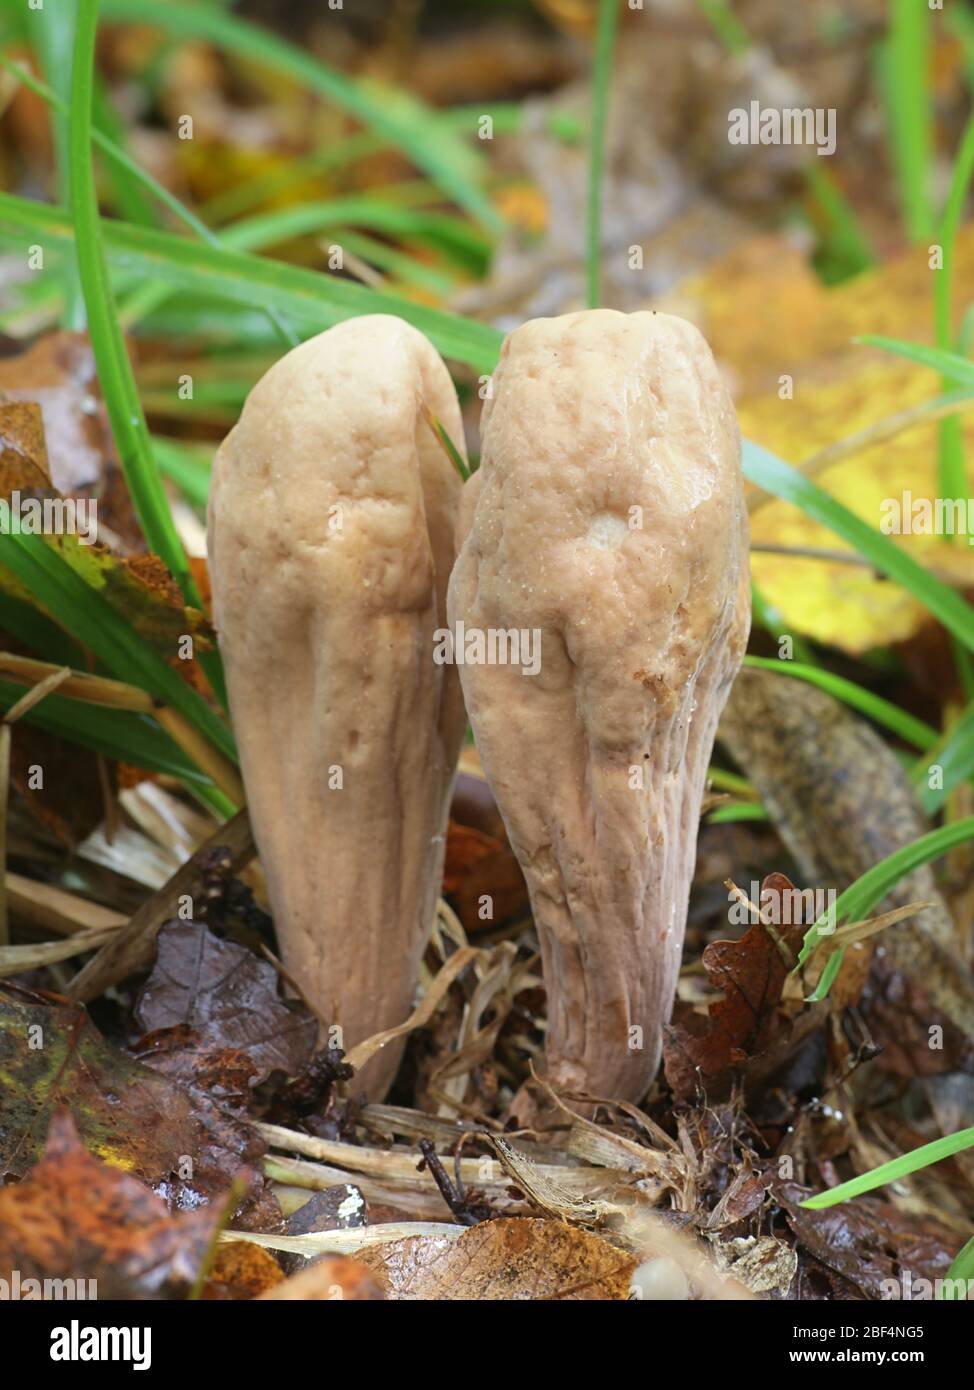 Clavariadelphus pistillaris, noto come Club gigantesco fungo, considerato alimento funzionale a causa della sua elevata attività antiossidante Foto Stock